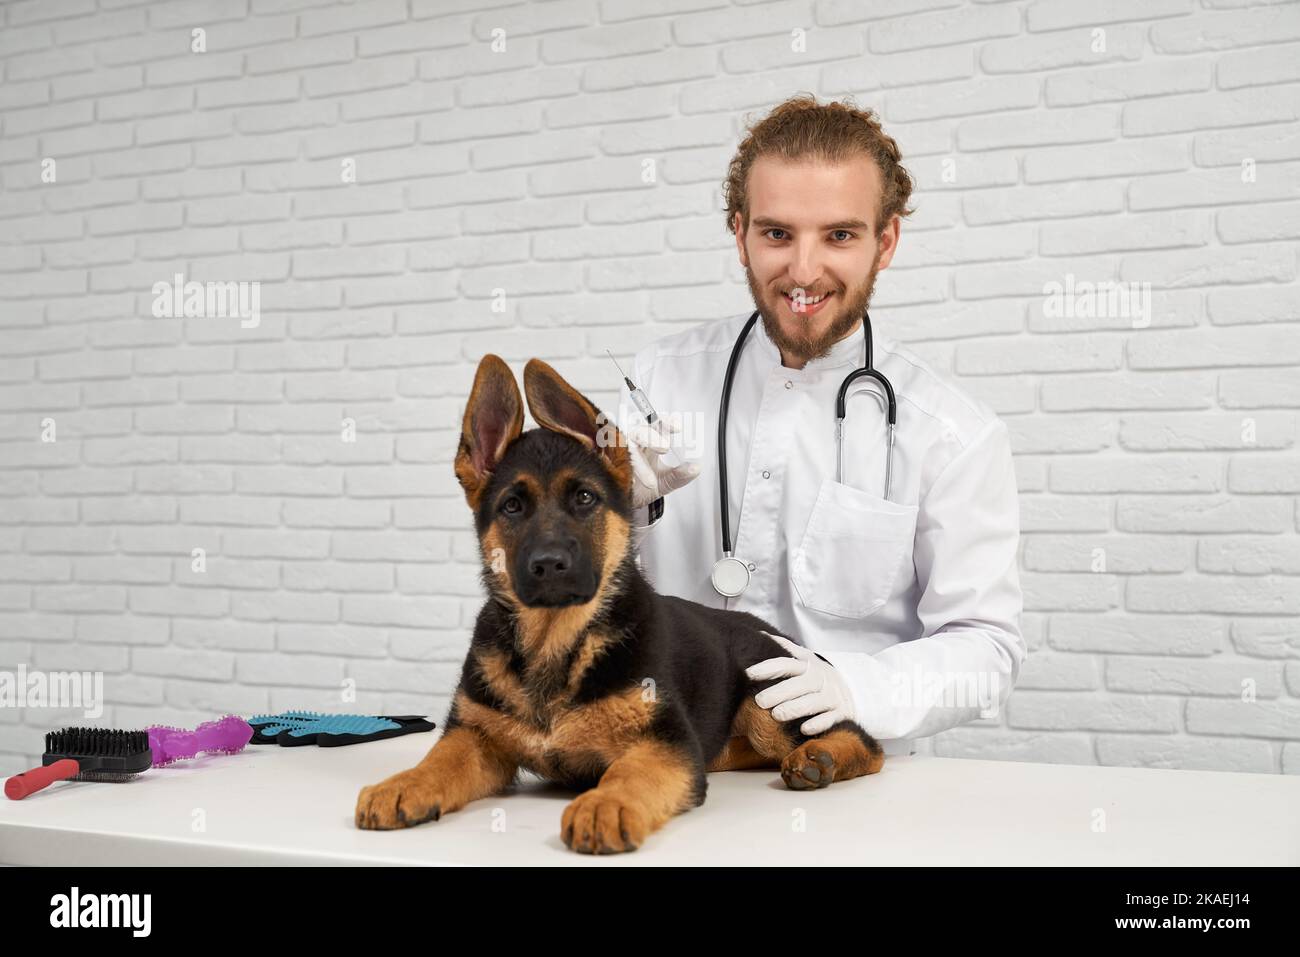 Porträt eines Tierarztes mit lockigen Haaren und eines elsässischen Hundes, der mit den Ohren auf dem Tisch liegt. Tier ruhig schauen gerade vertrauensvolle Arzt. Tierarzt hält die Injektion sicher im Arm. Stockfoto